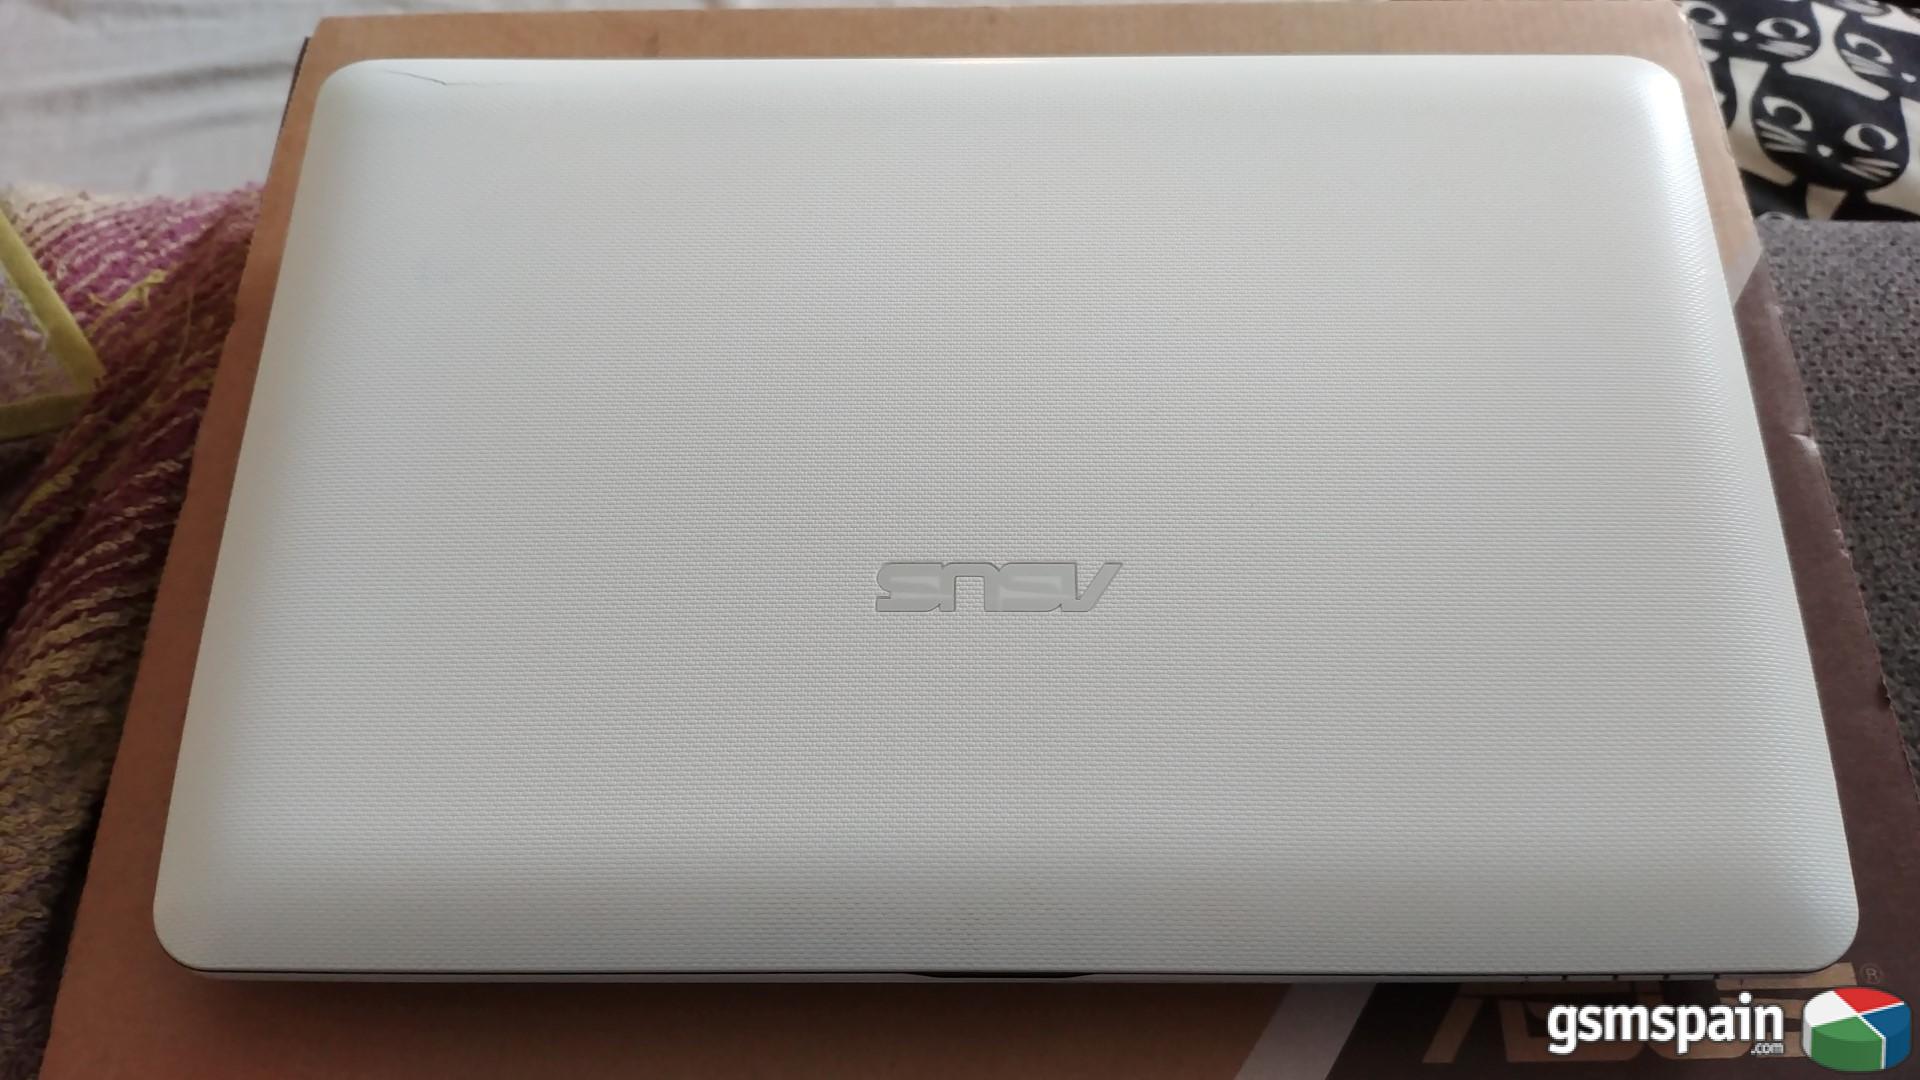 Meseta retorta otro VENDO] Mini portatil Asus EEE PC 1011cx blanco gran duracion de bateria.